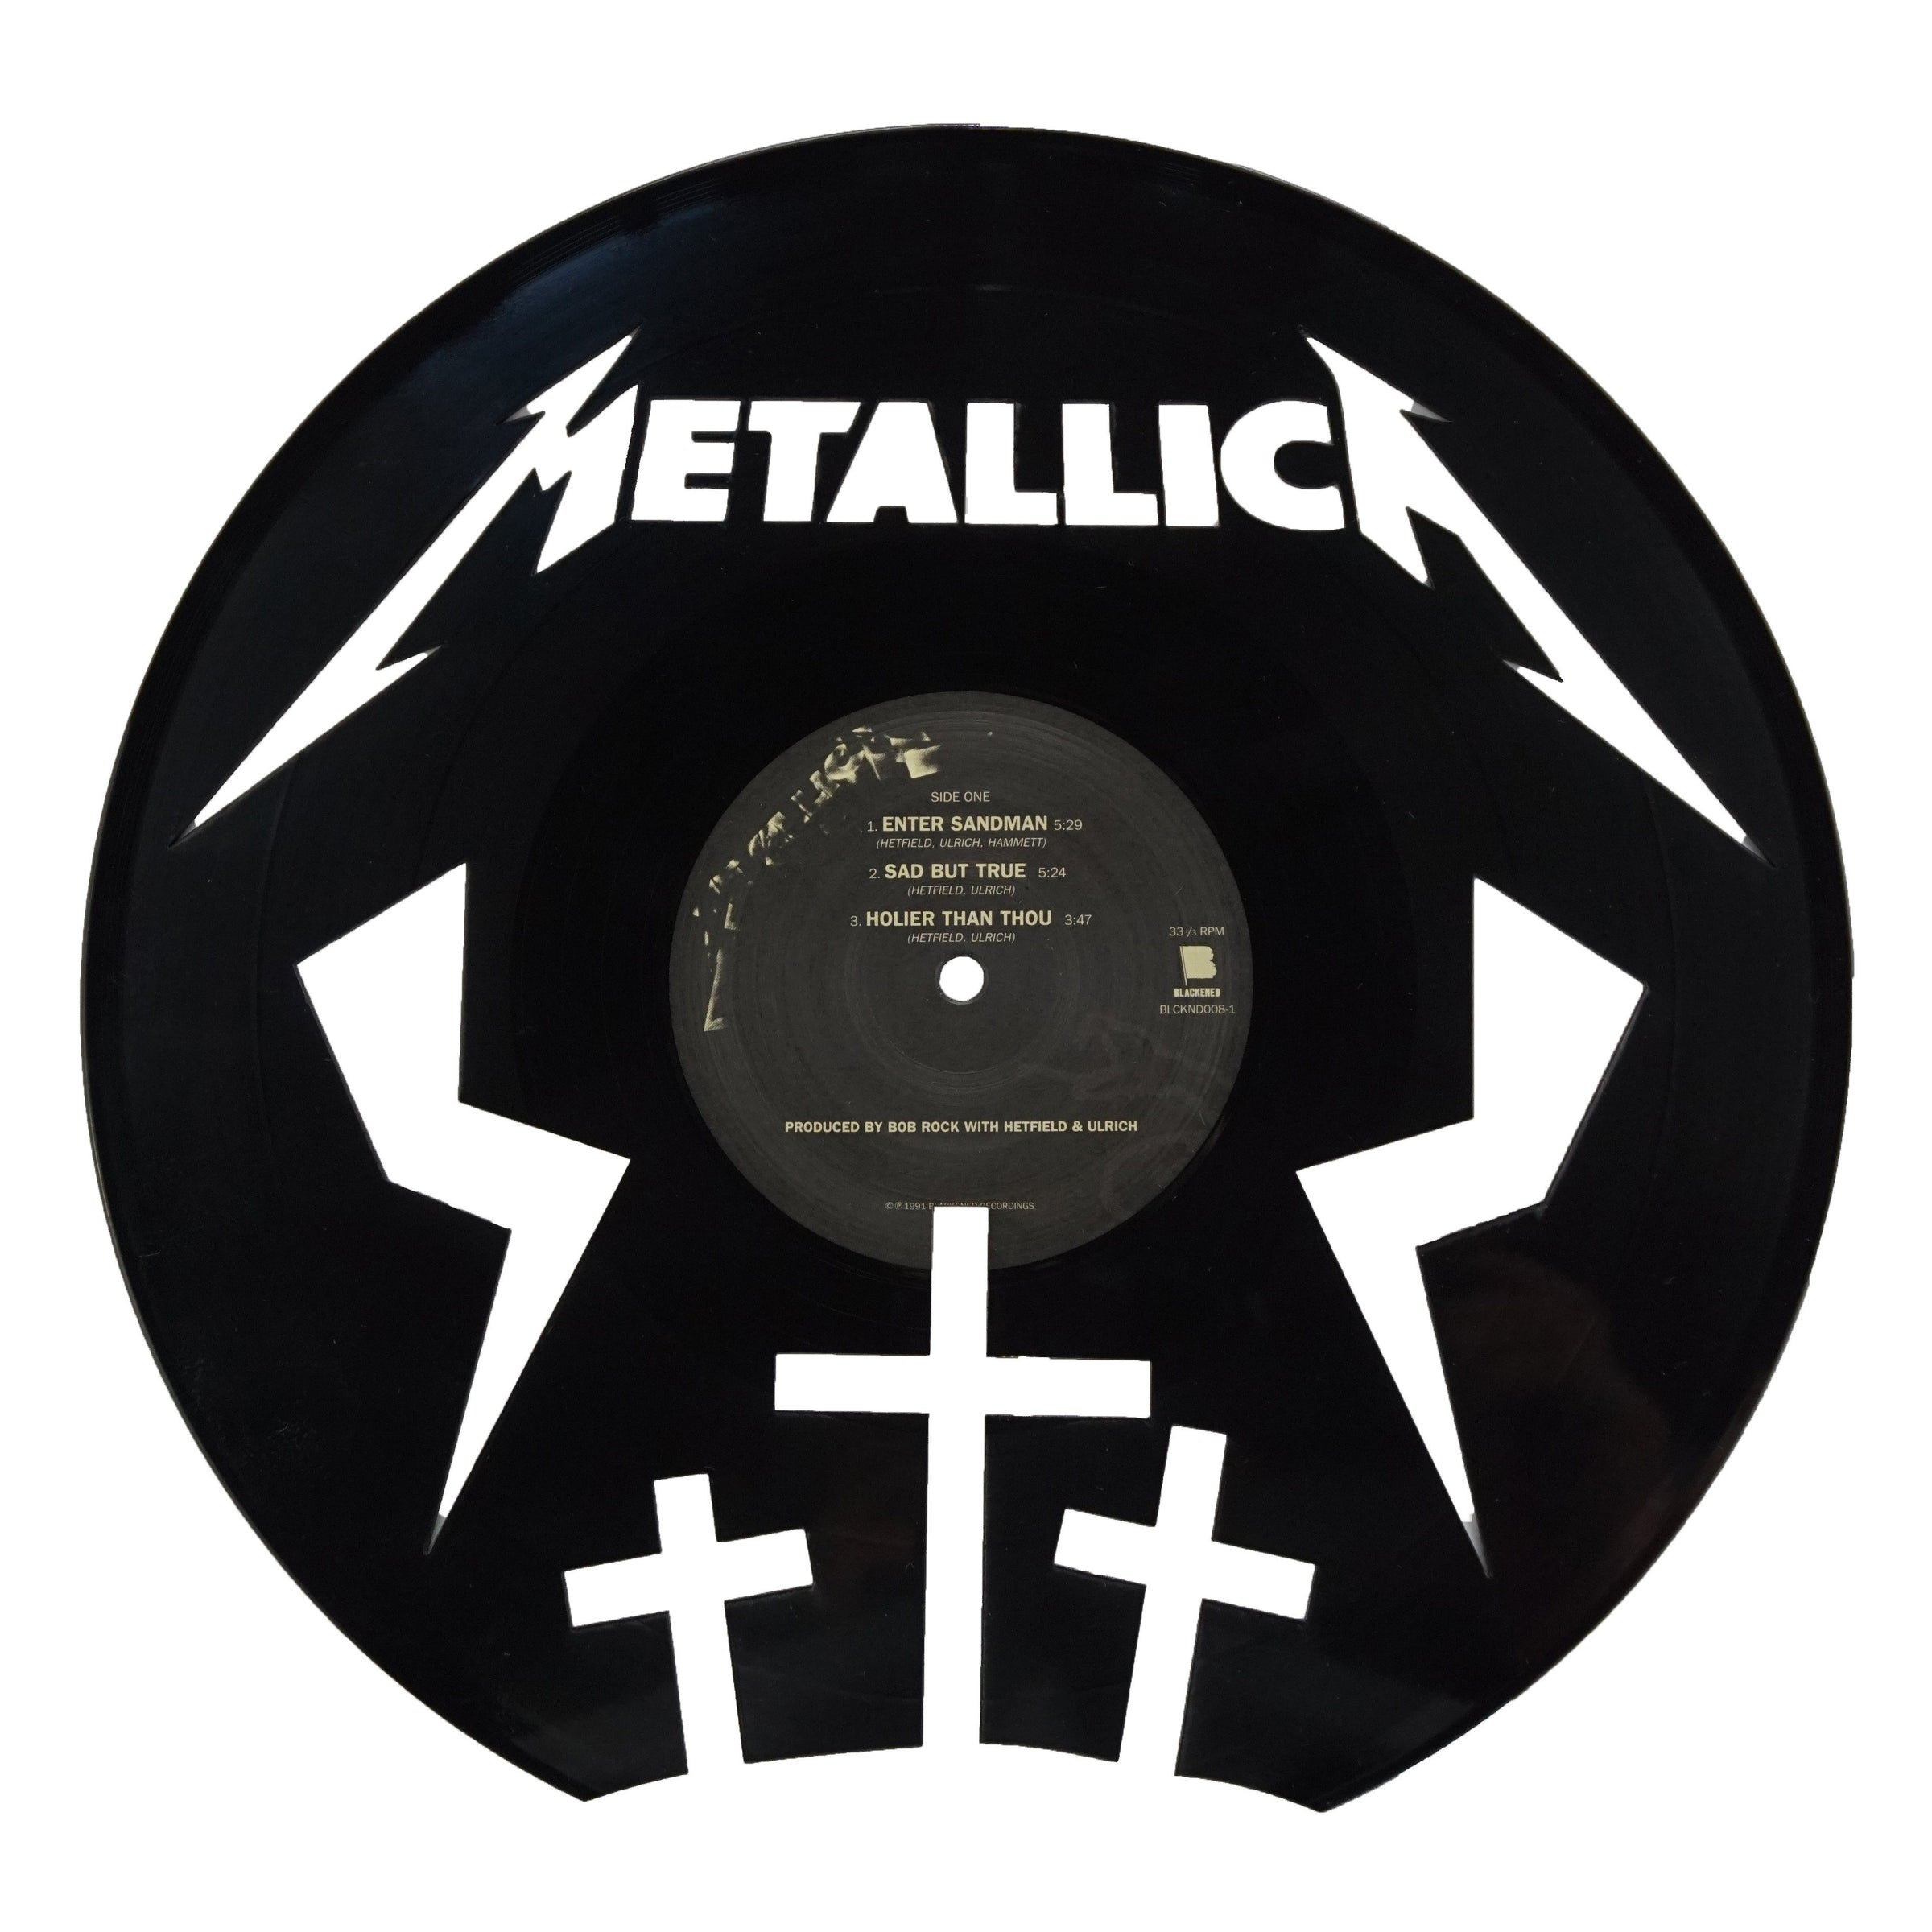 Metallica Vinyl Record Art Deadwax Art